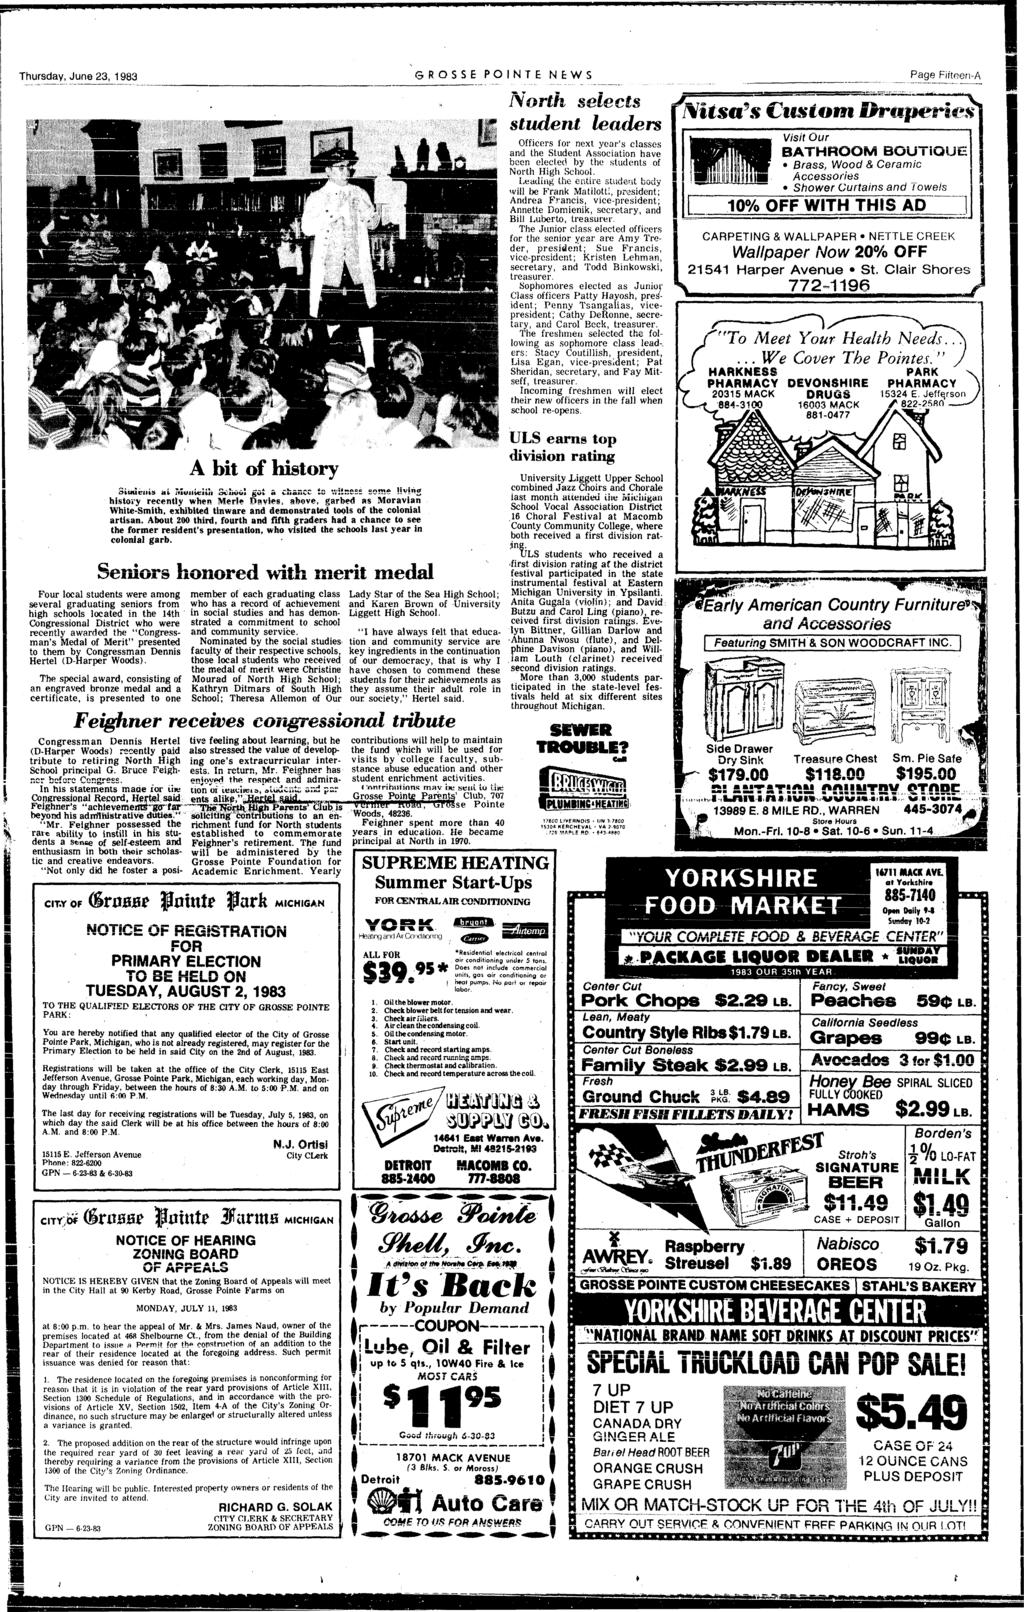 Thursday, June 23, 1983 GROSSB PONTE NEWS Page Ffteen-A A bt of hstory Smtcms nl monurl'j ScOA got a chance c -.